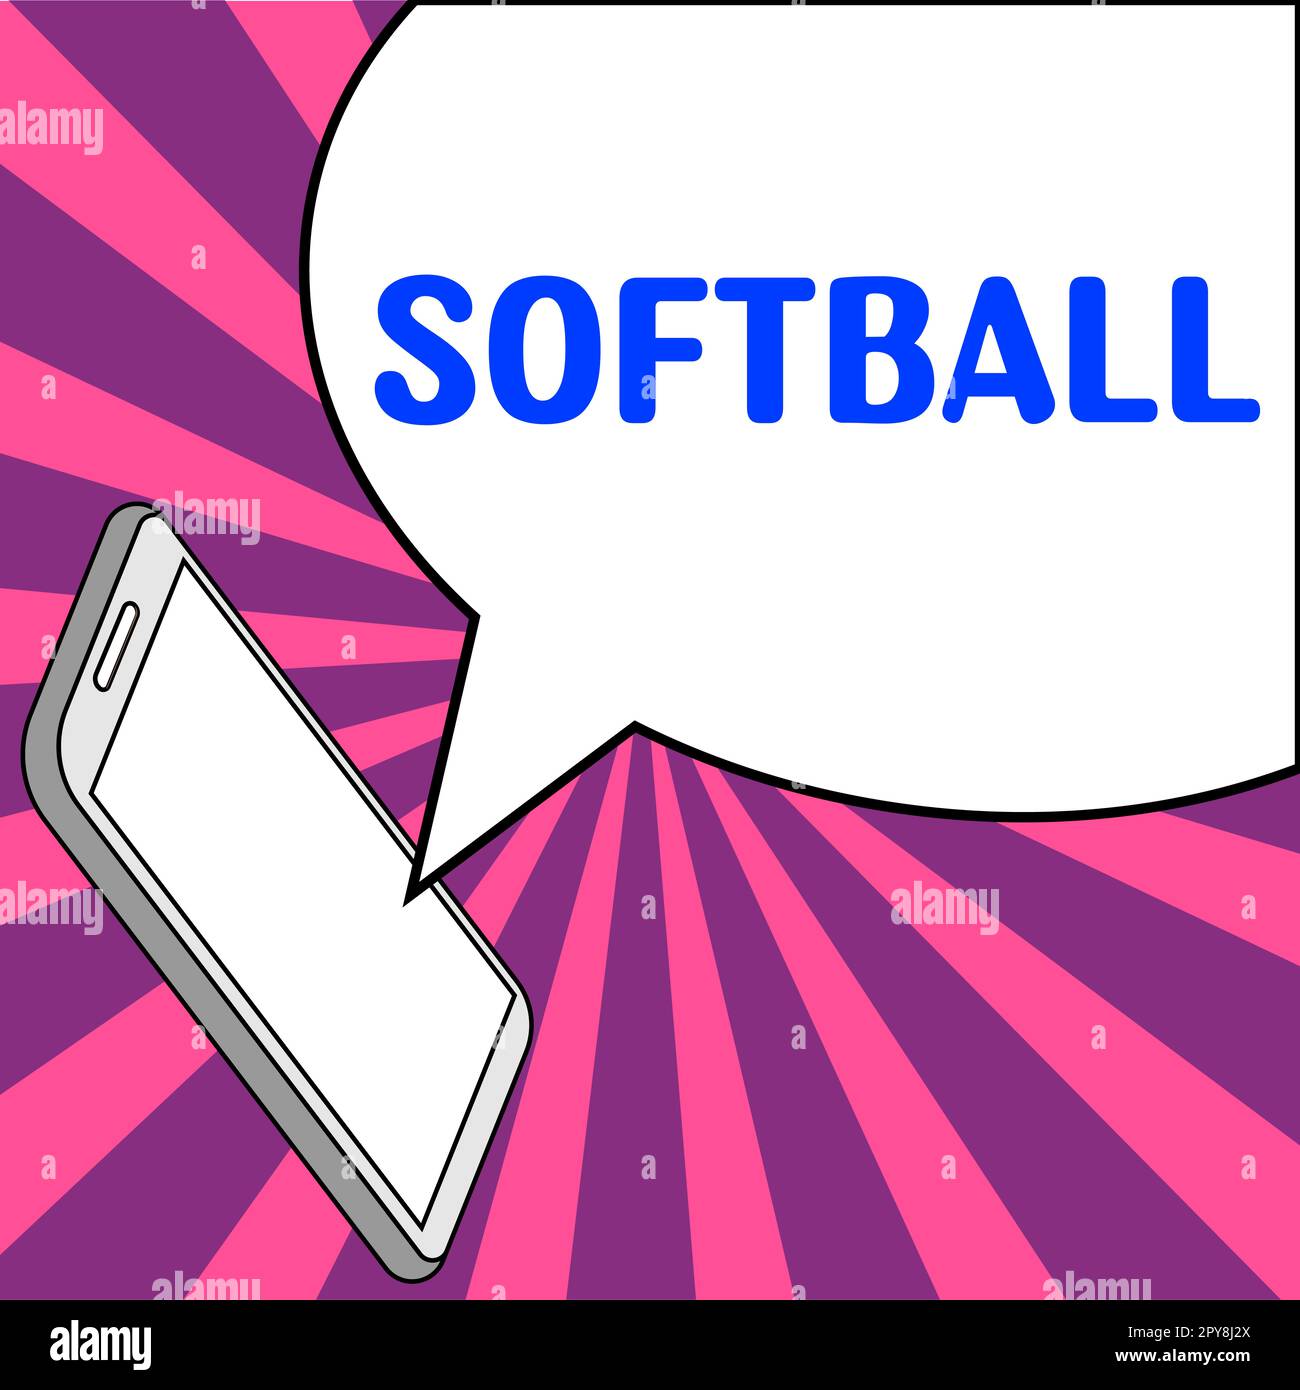 Softball d'affichage conceptuel. Concept d'affaires un sport semblable au baseball joué avec une balle et une batte Banque D'Images